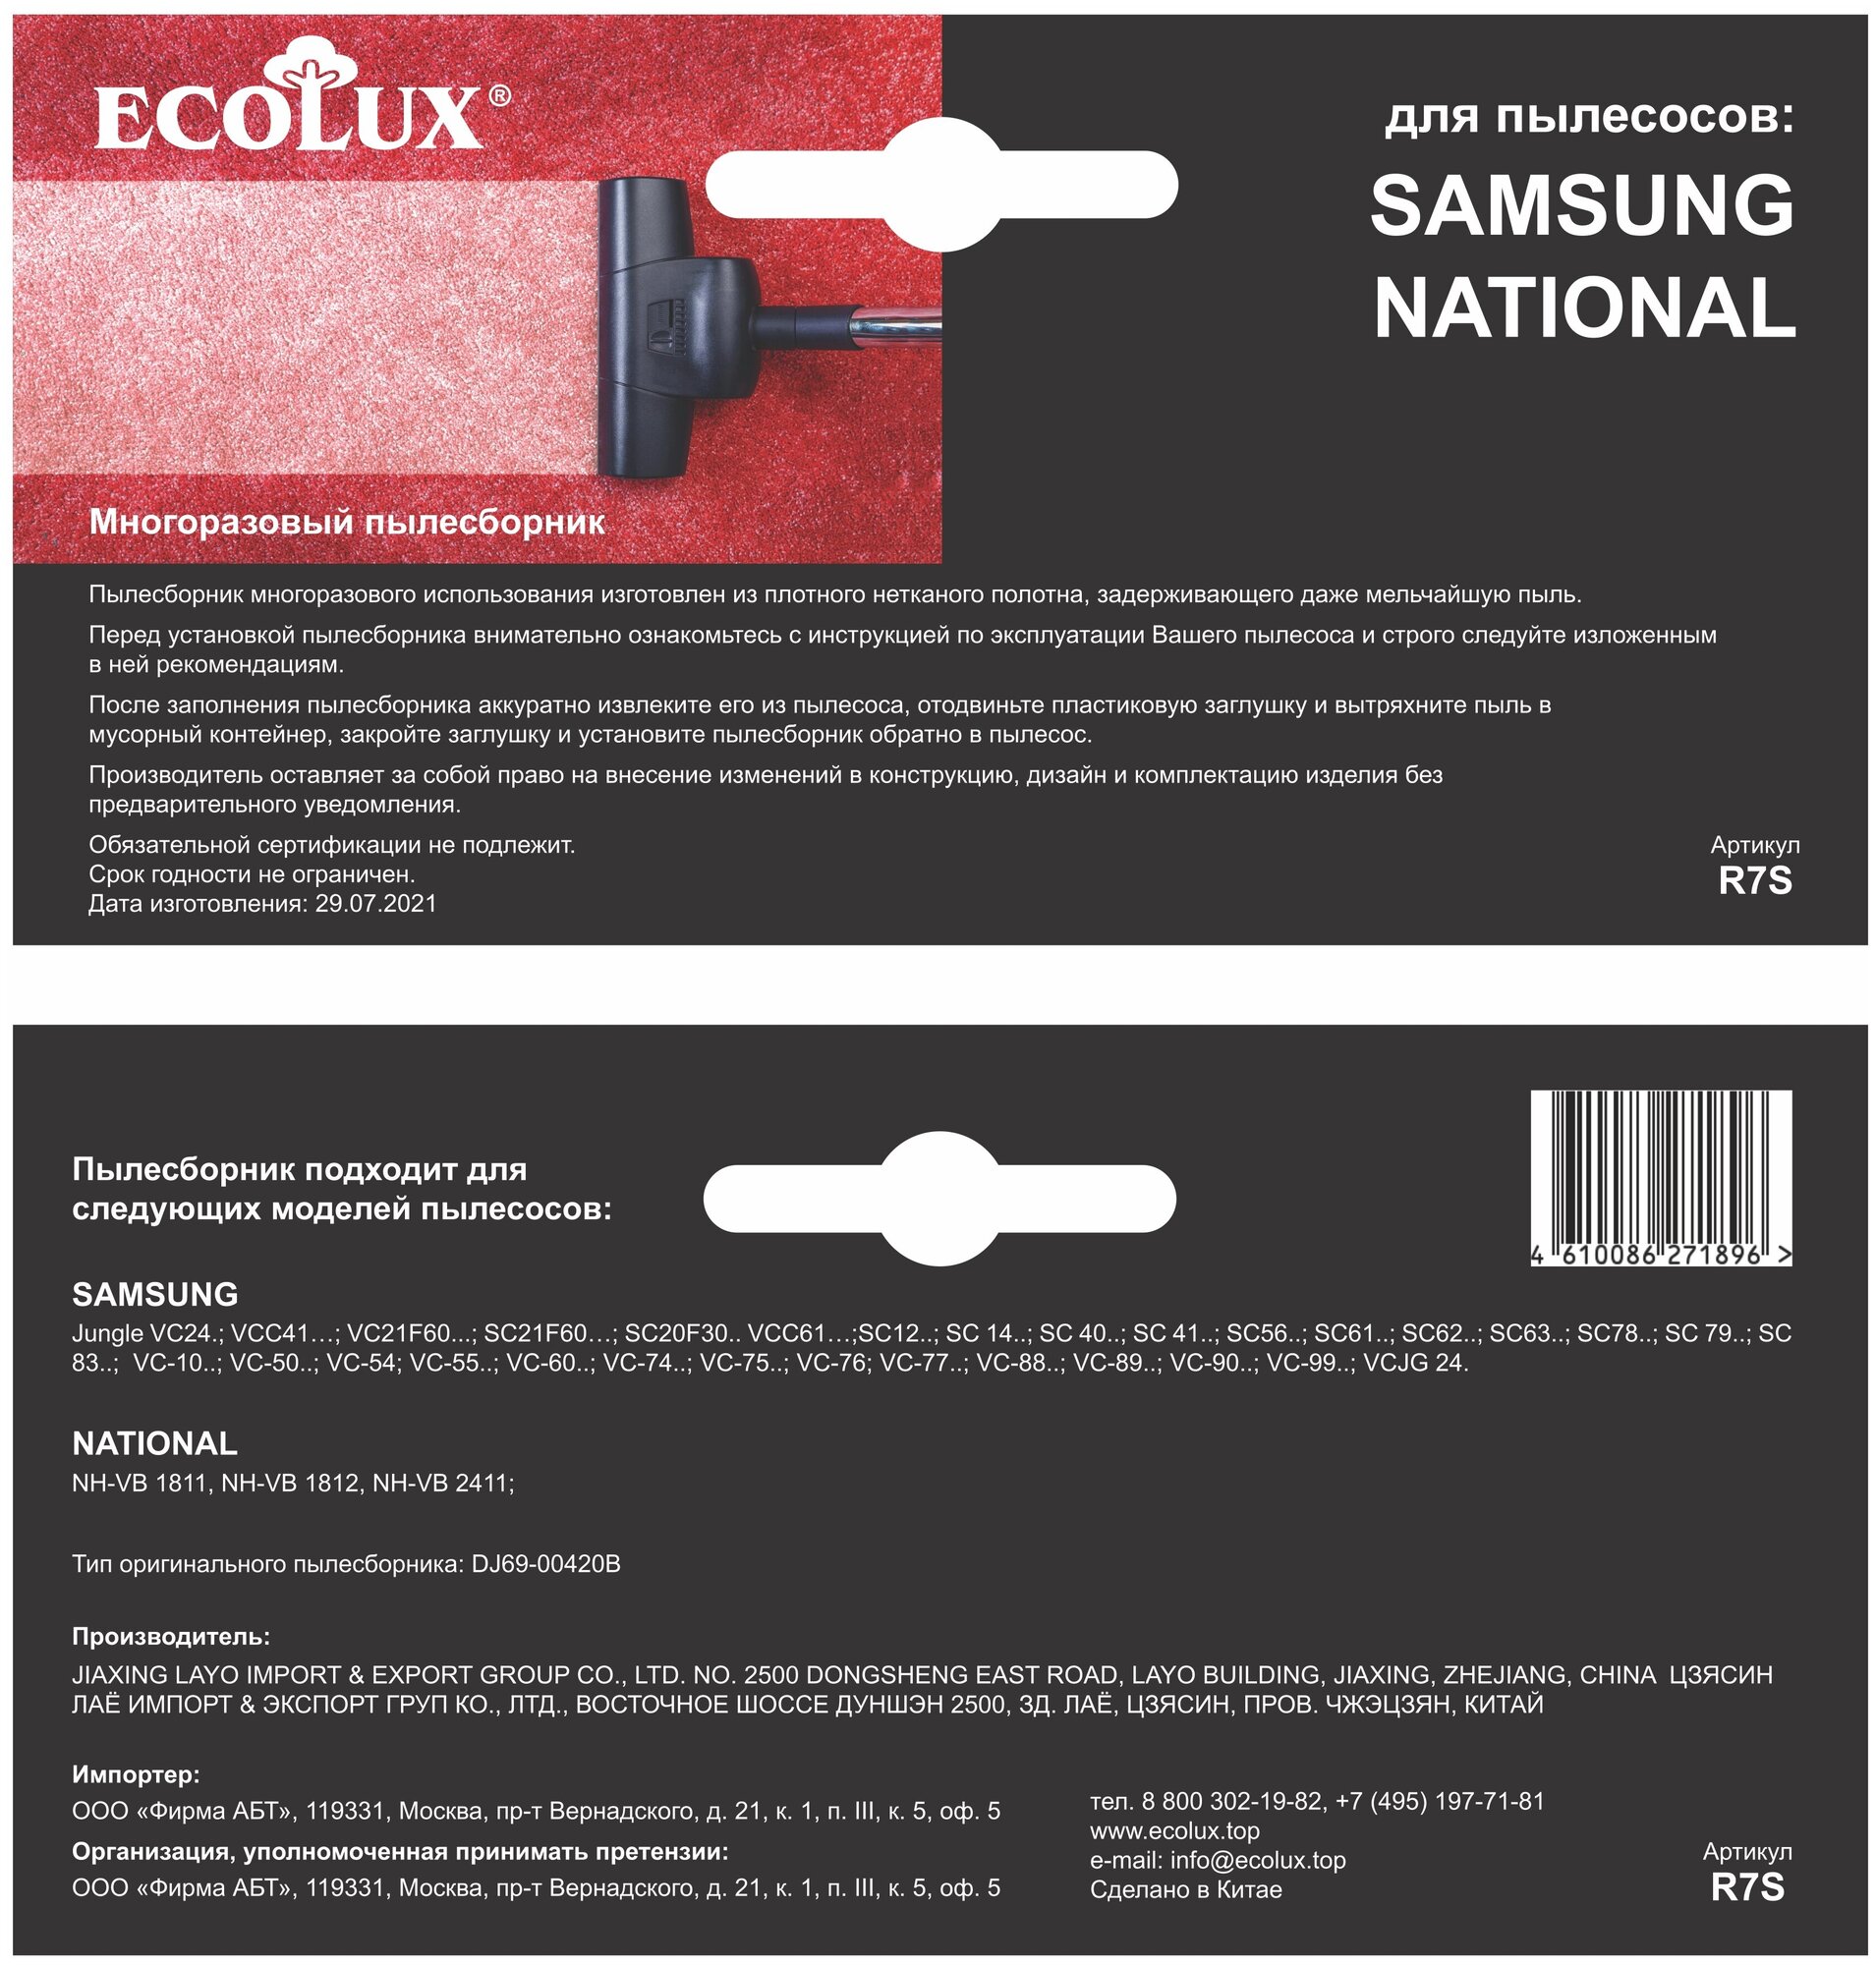 Ecolux Многоразовый тканевый пылесборник для пылесоса SAMSUNG (объём 2,5 л.), 1 шт, R7S